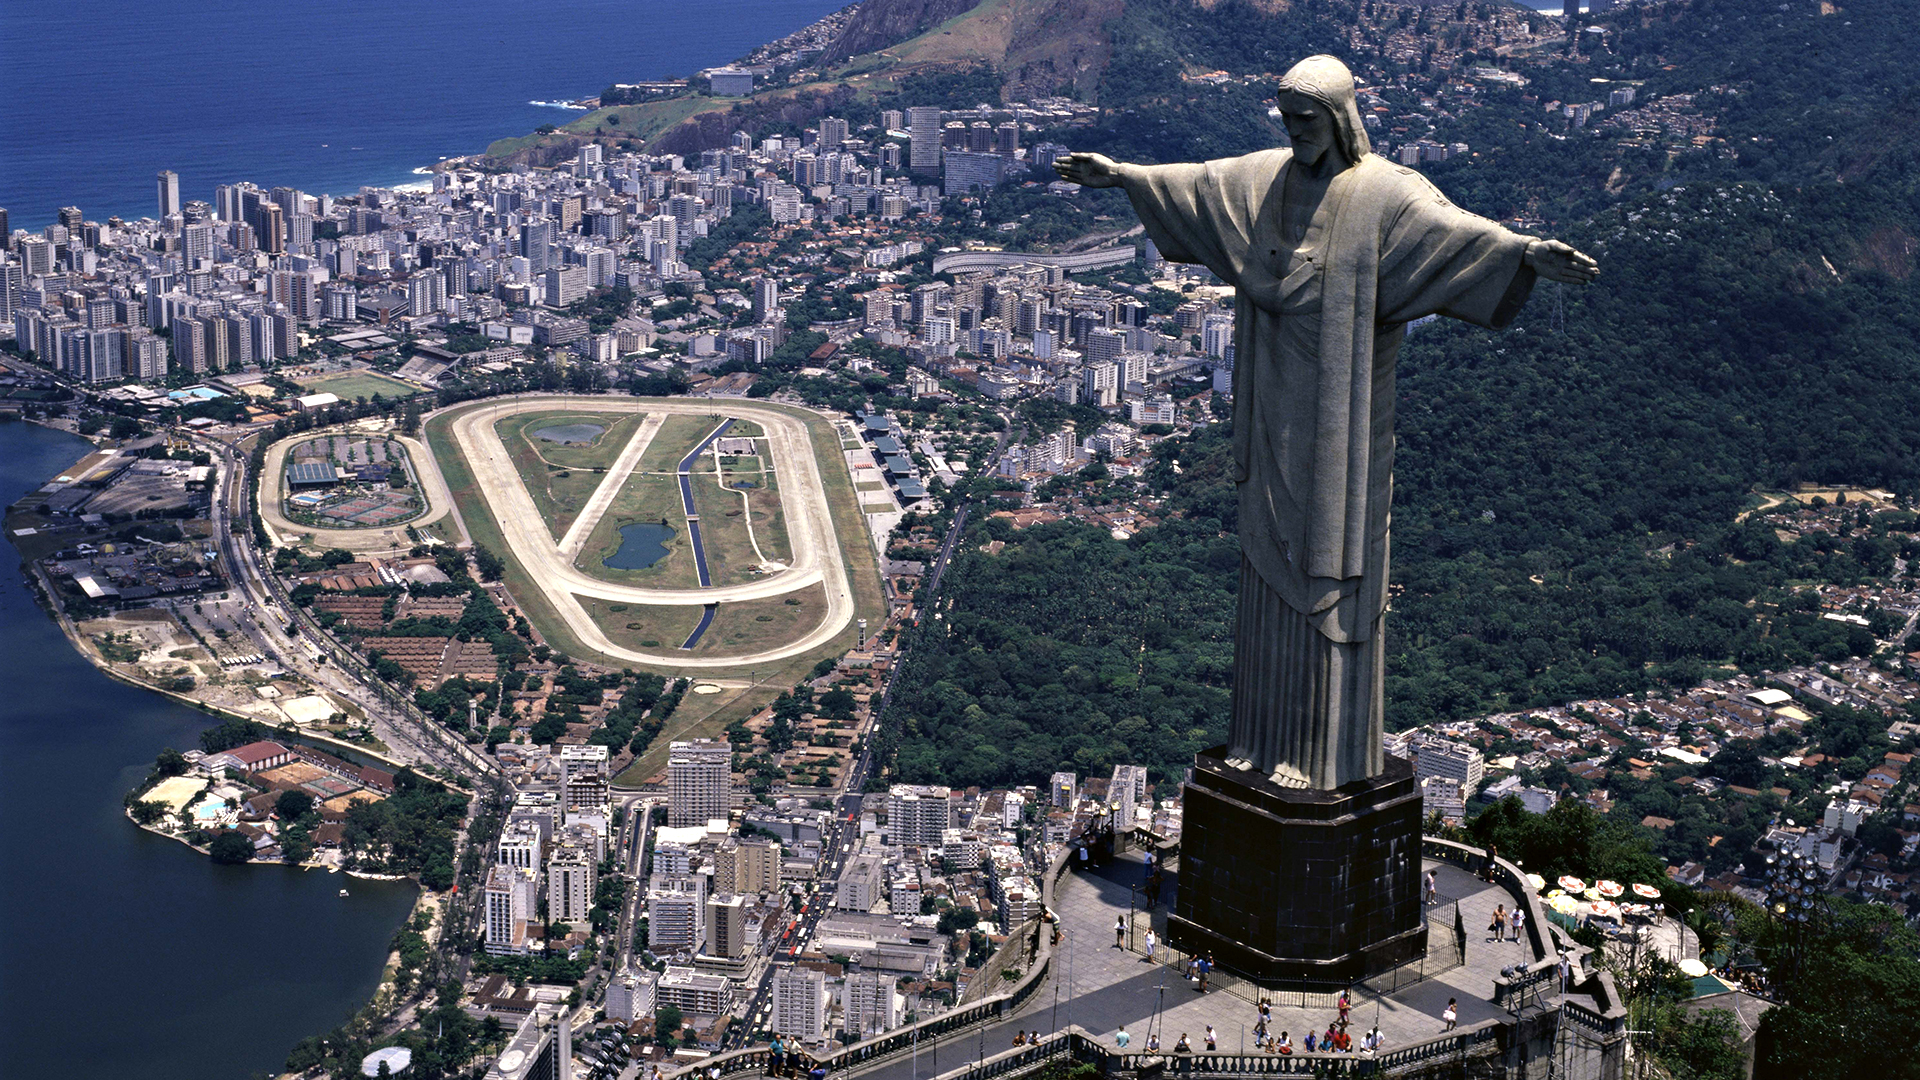 Christ-the-Redeemer-Rio-de-Janeiro-Brazil-1920x1080-hd-wallpapers.co.jpg